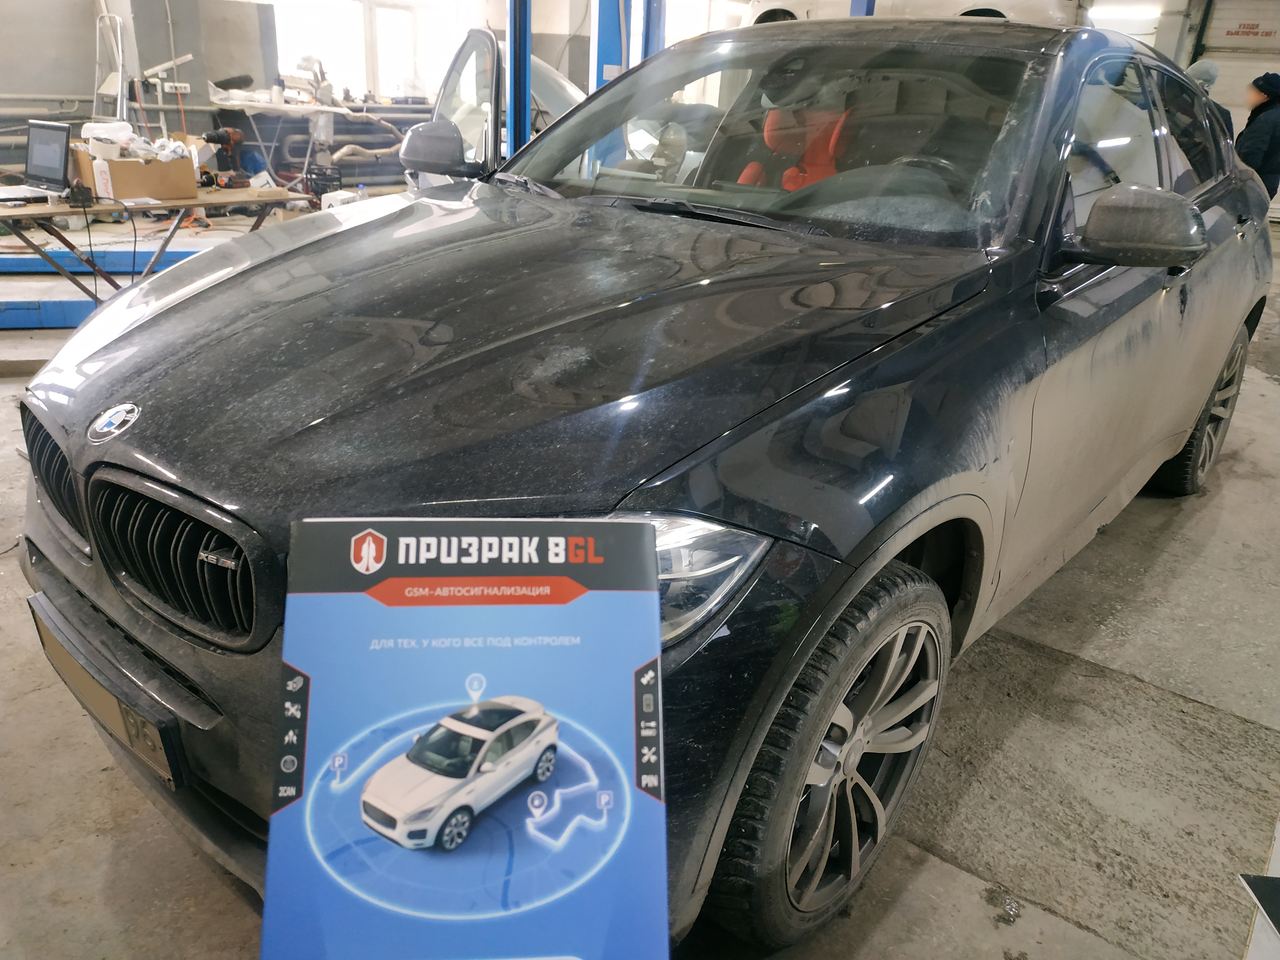 BMW X6 F16, установка сигнализации Призрак 8GL с автозапуском